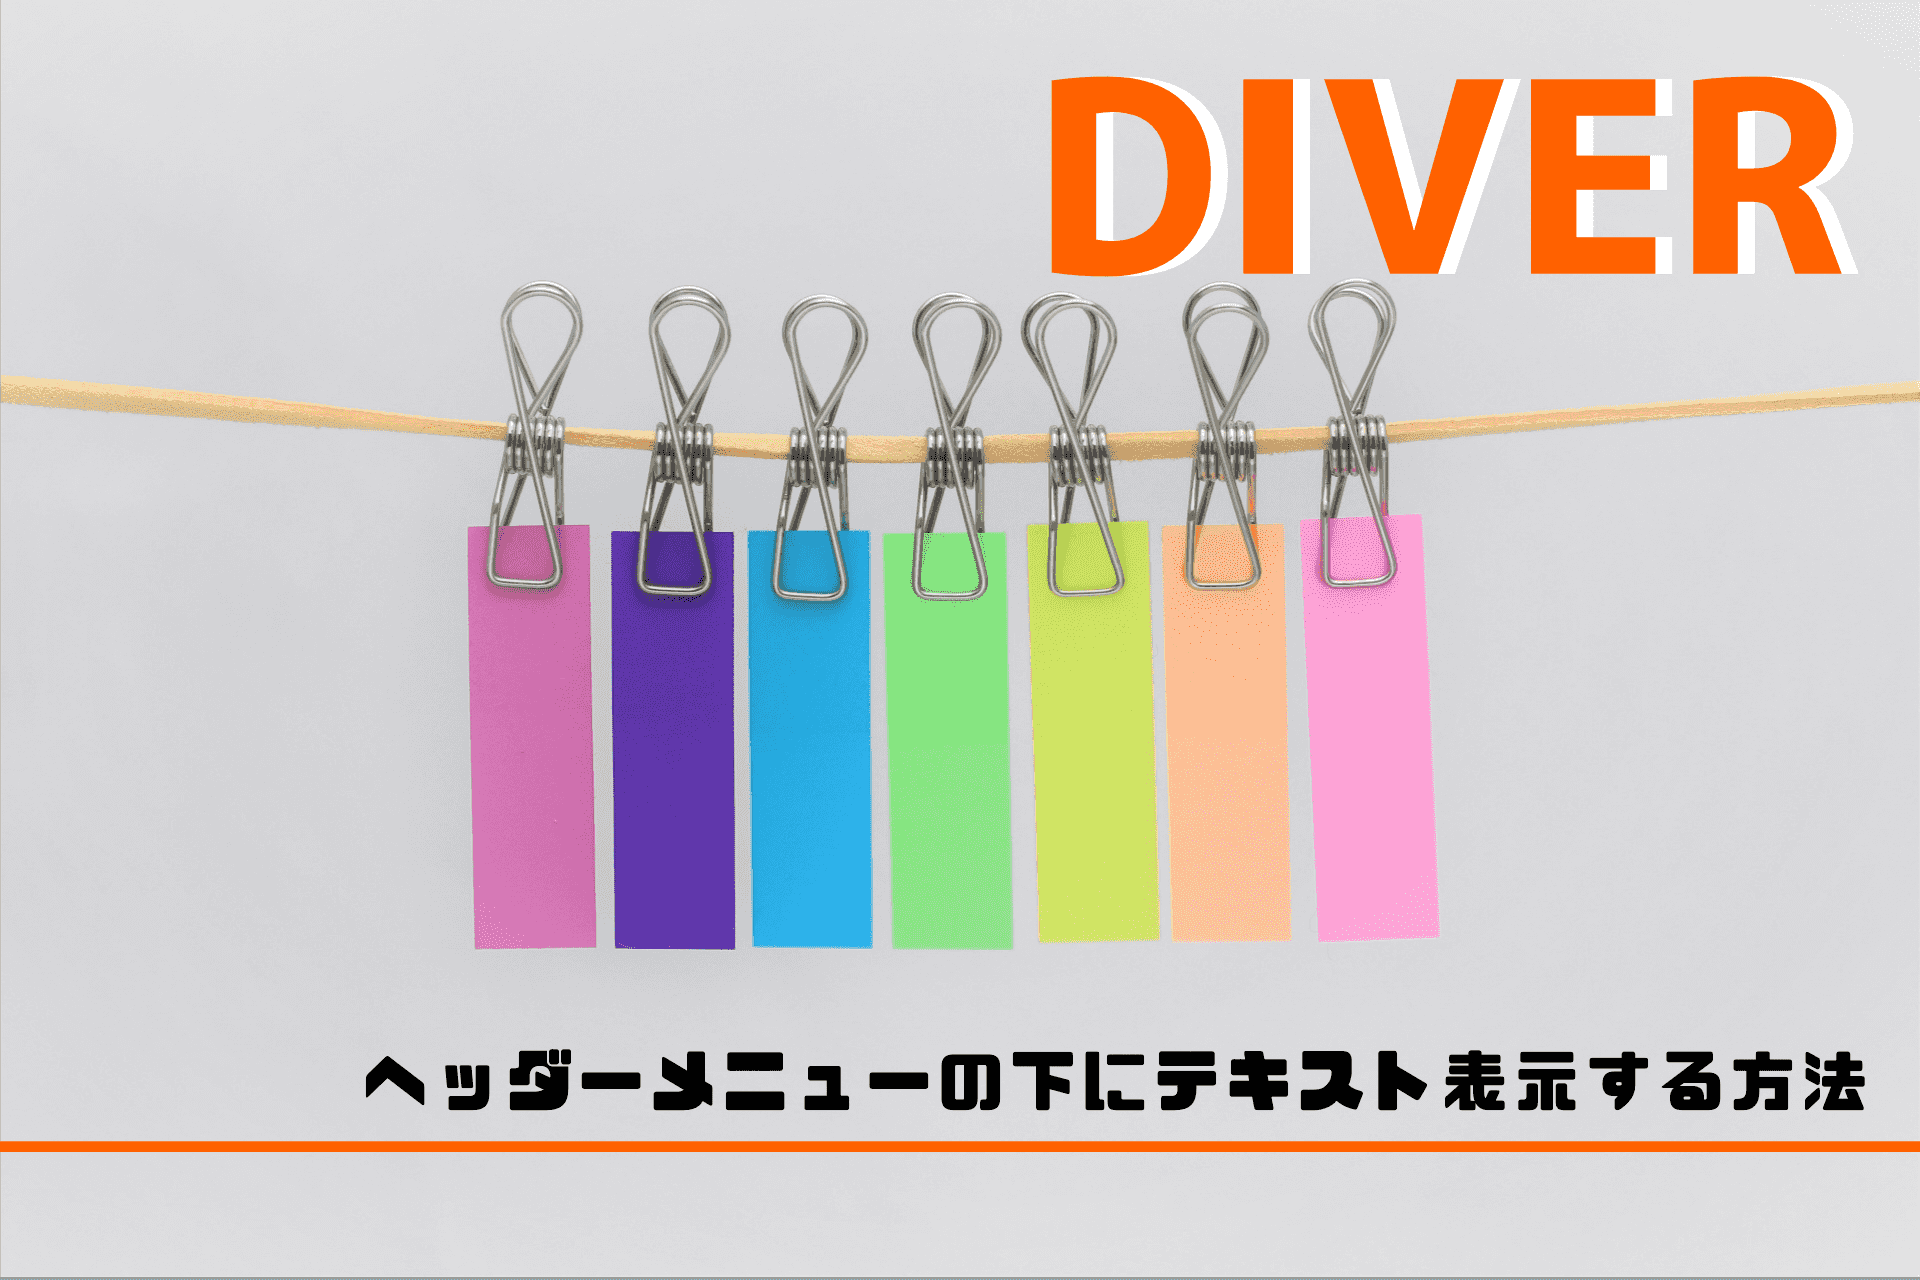 【Diver】ヘッダーメニューの下にテキスト表示してデザインを変える方法